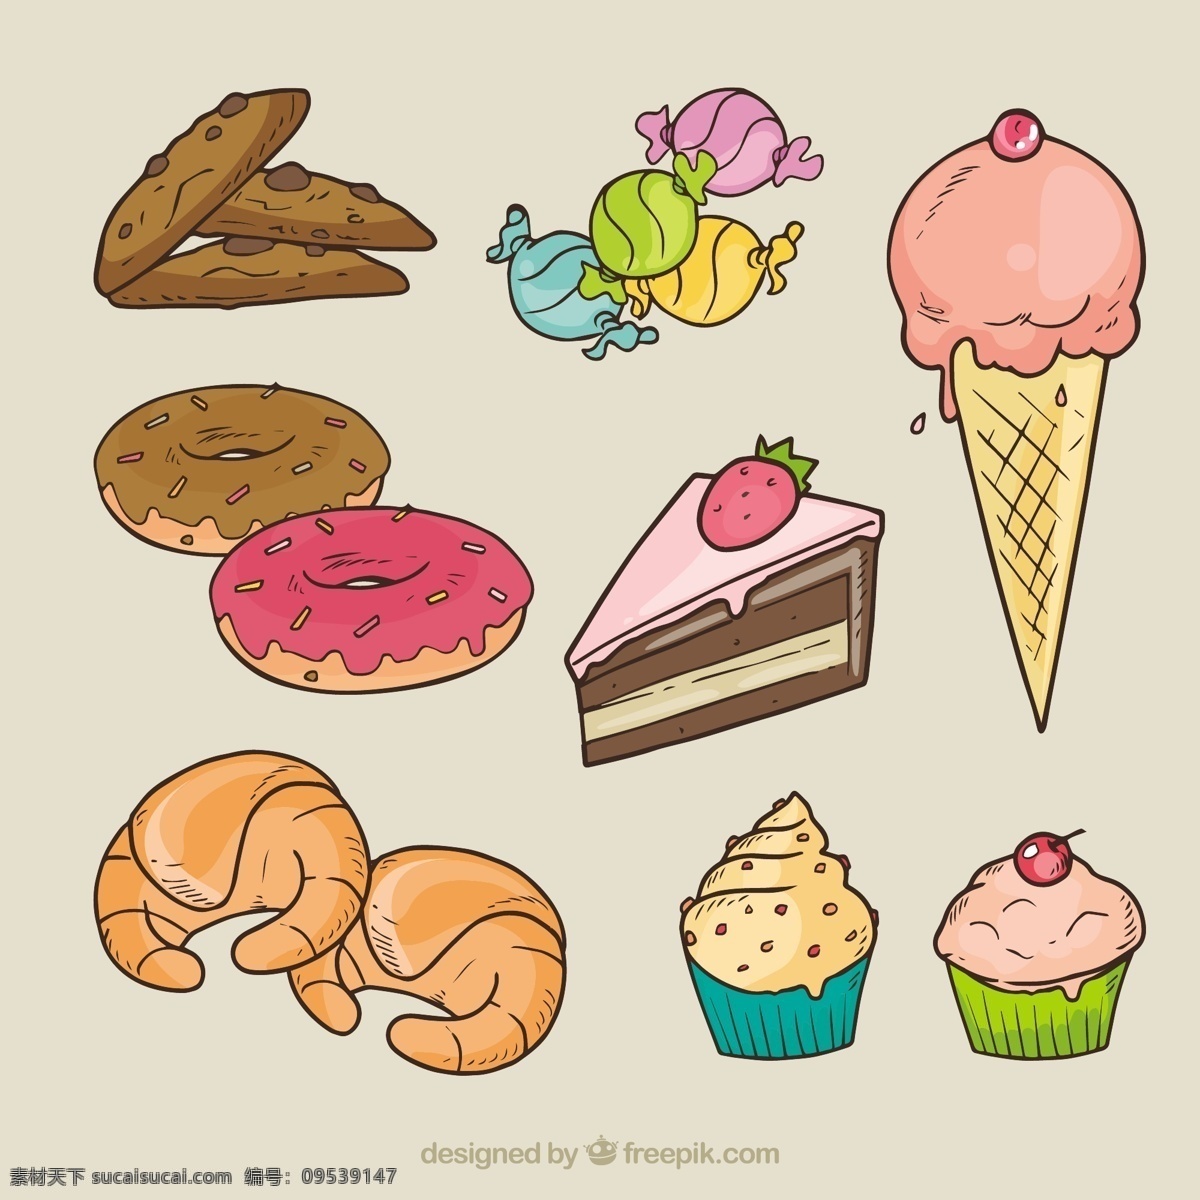 各种糖果插图 蛋糕 面包 冰淇淋 糖果 甜 插图 甜甜圈 牛角包 美味可口 品种繁多 灰色